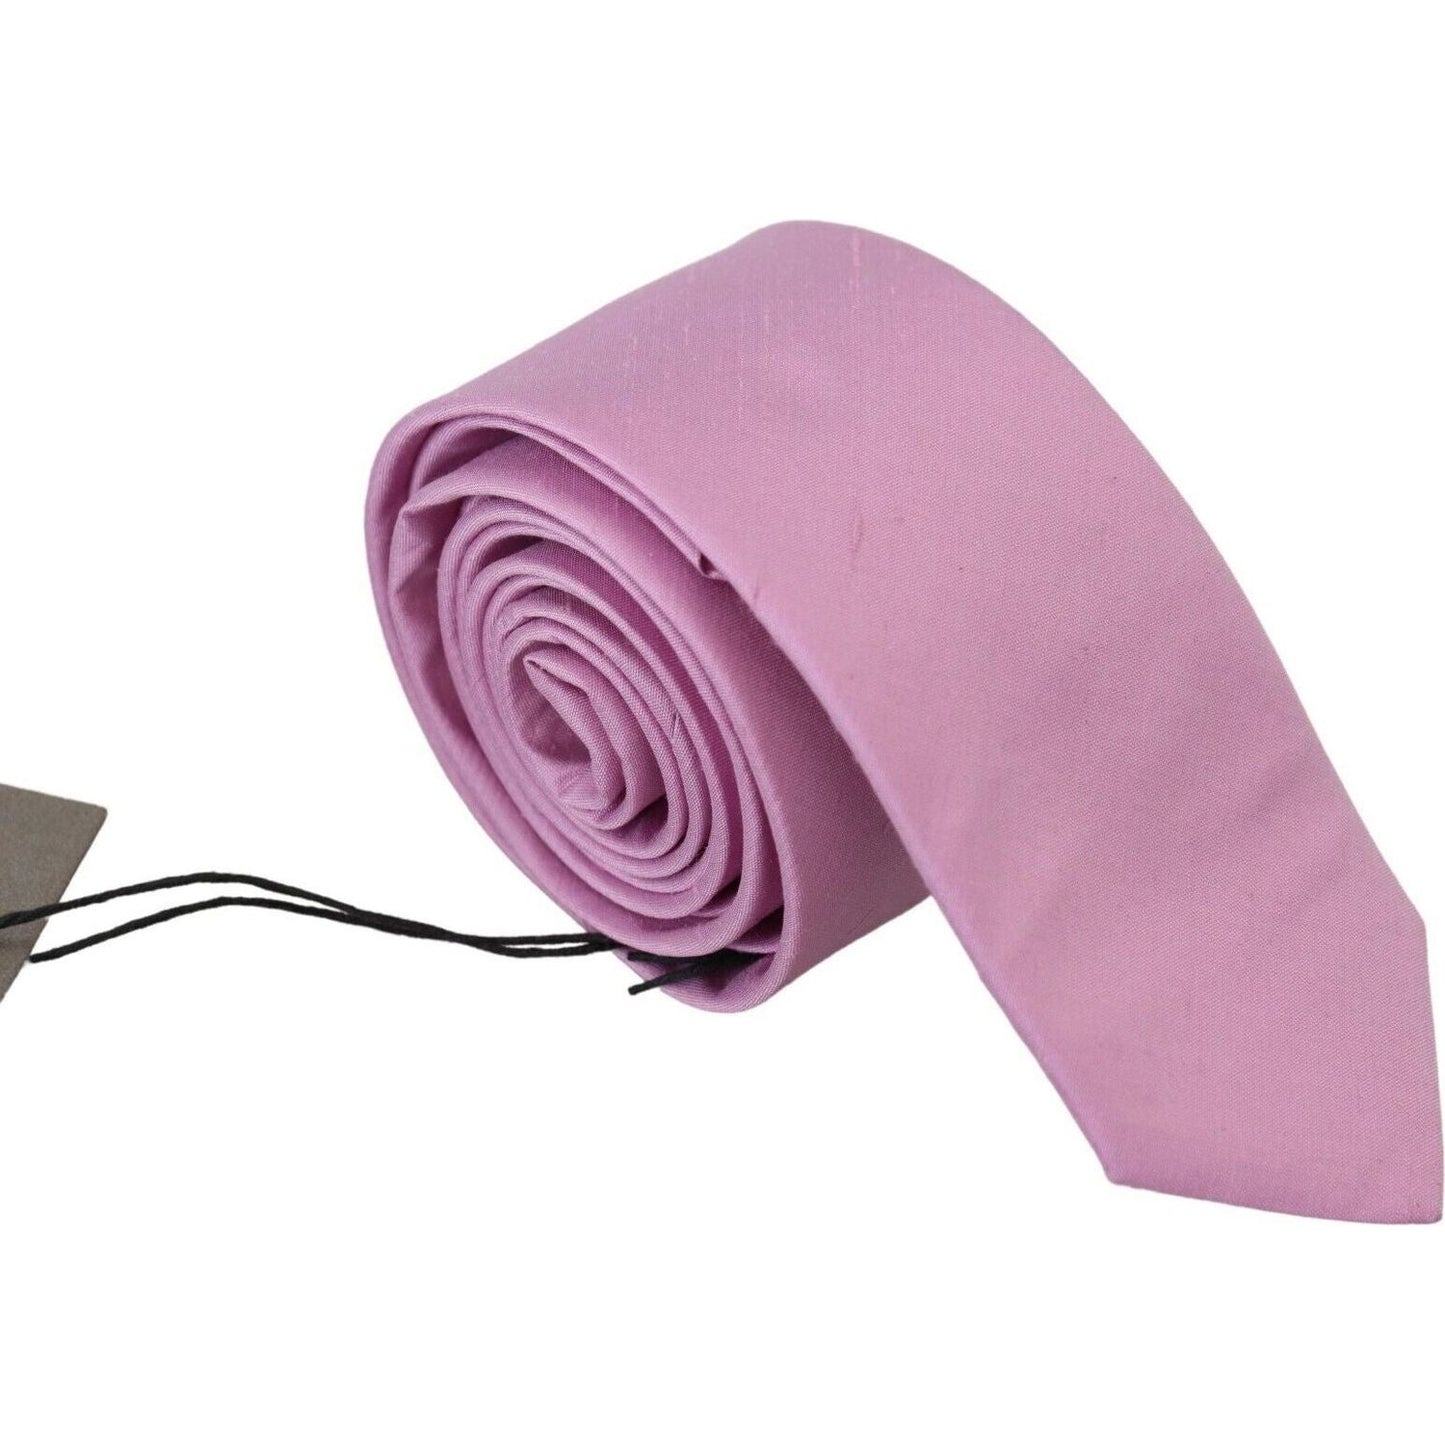 Elegant Silk Men's Tie in Pink Daniele Alessandrini